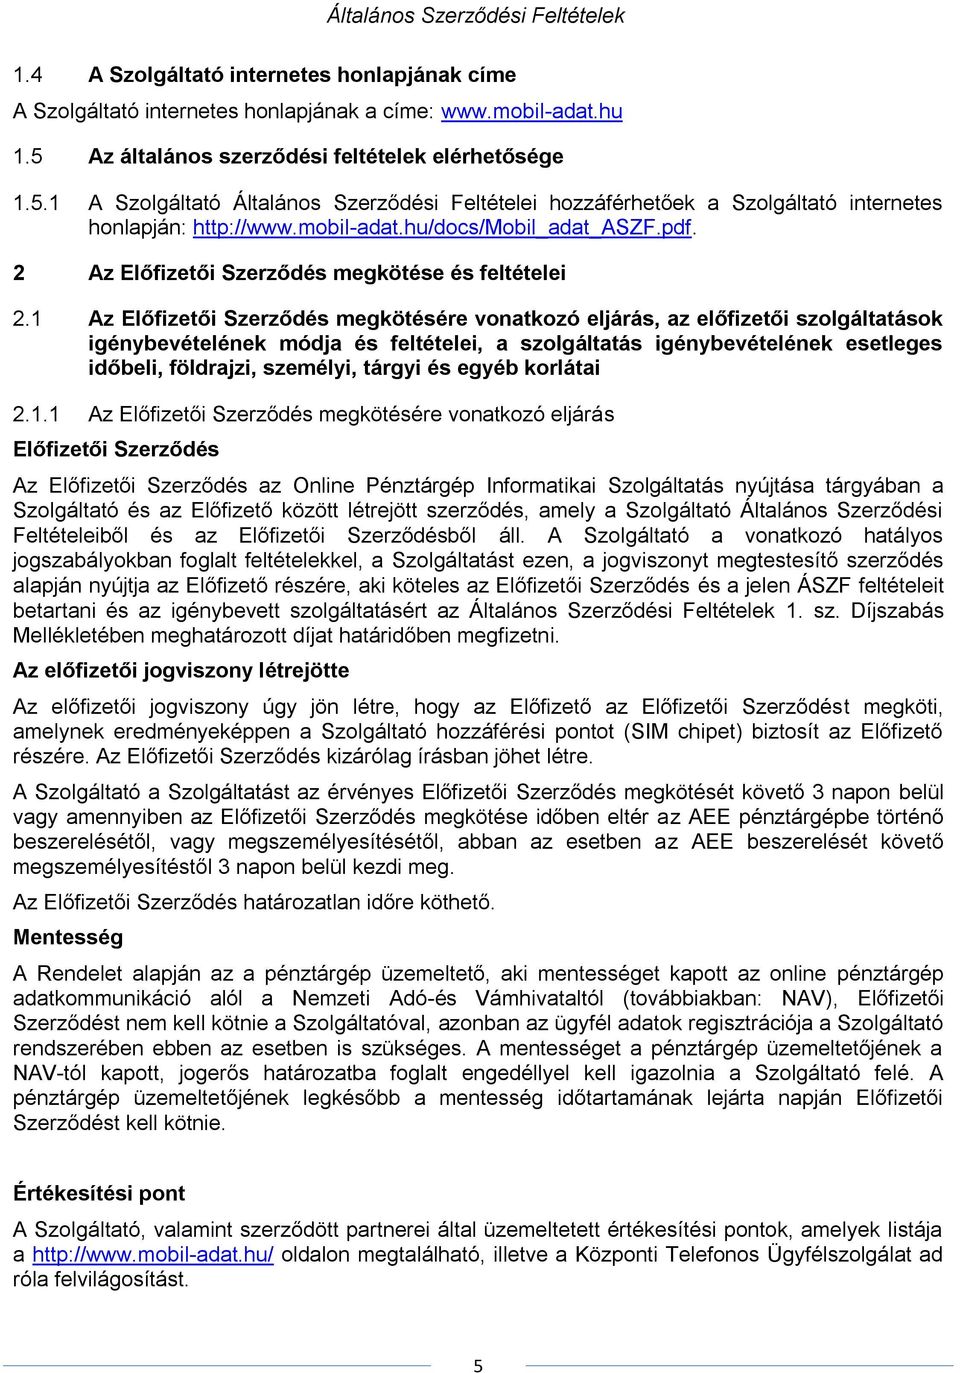 MOBIL ADAT Kft. Módosított Általános Szerződési Feltételei - PDF Free  Download